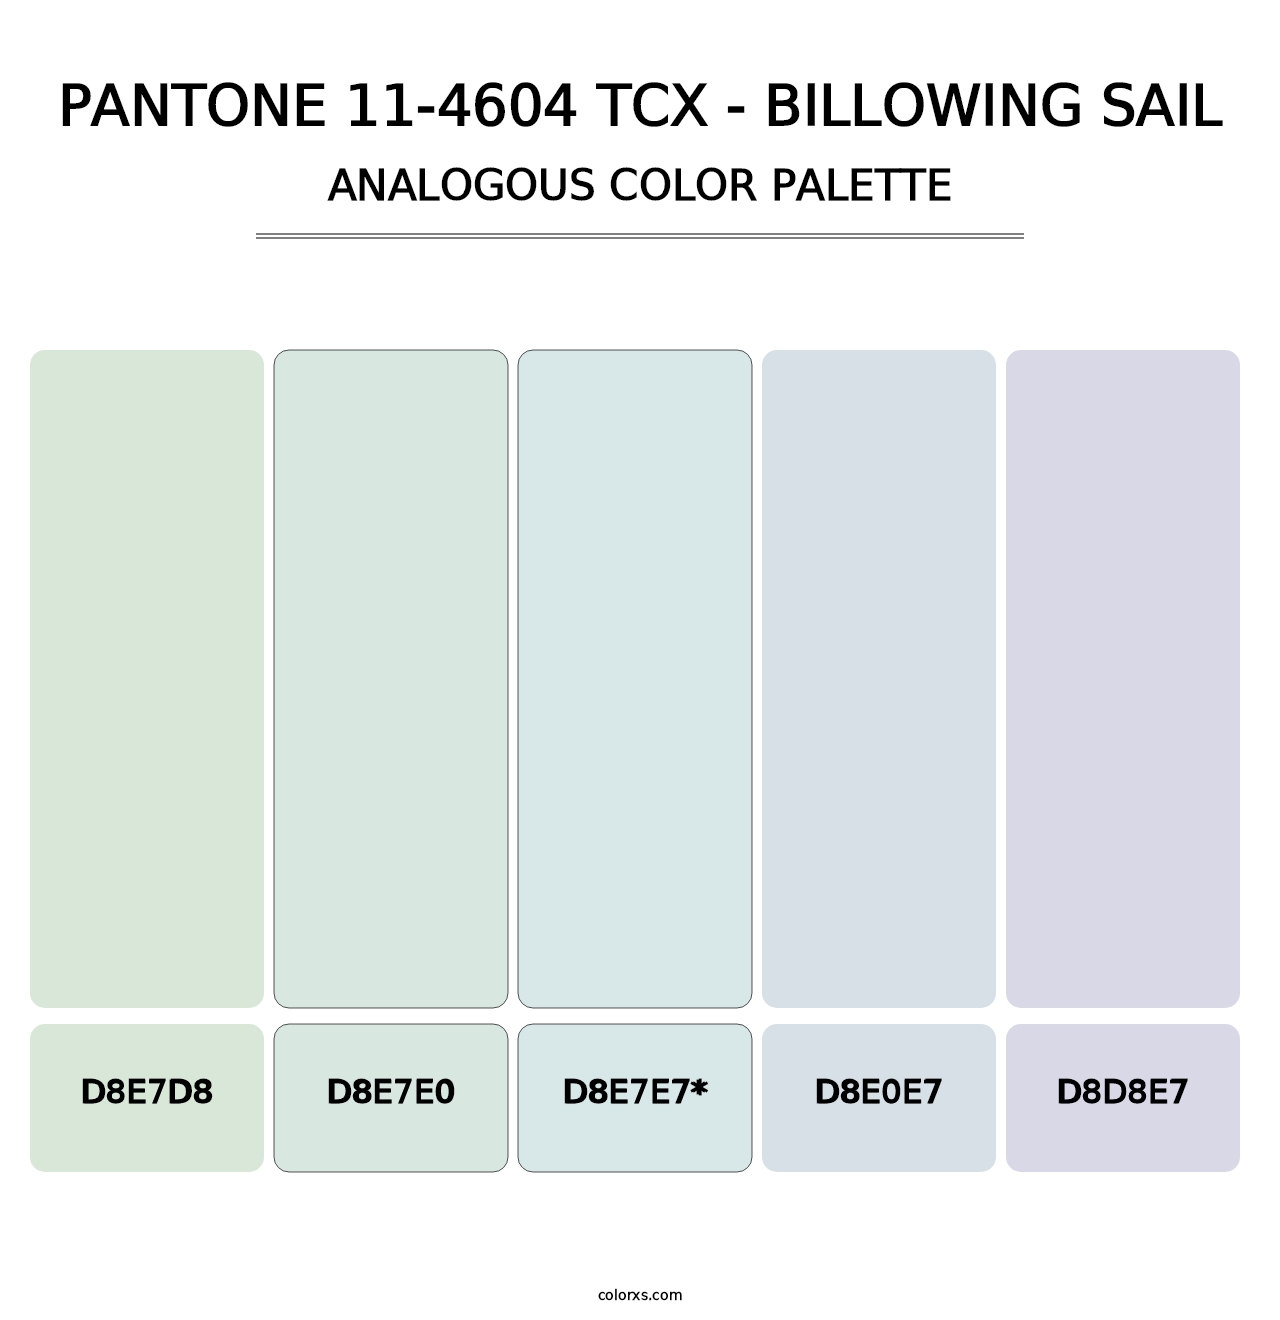 PANTONE 11-4604 TCX - Billowing Sail - Analogous Color Palette